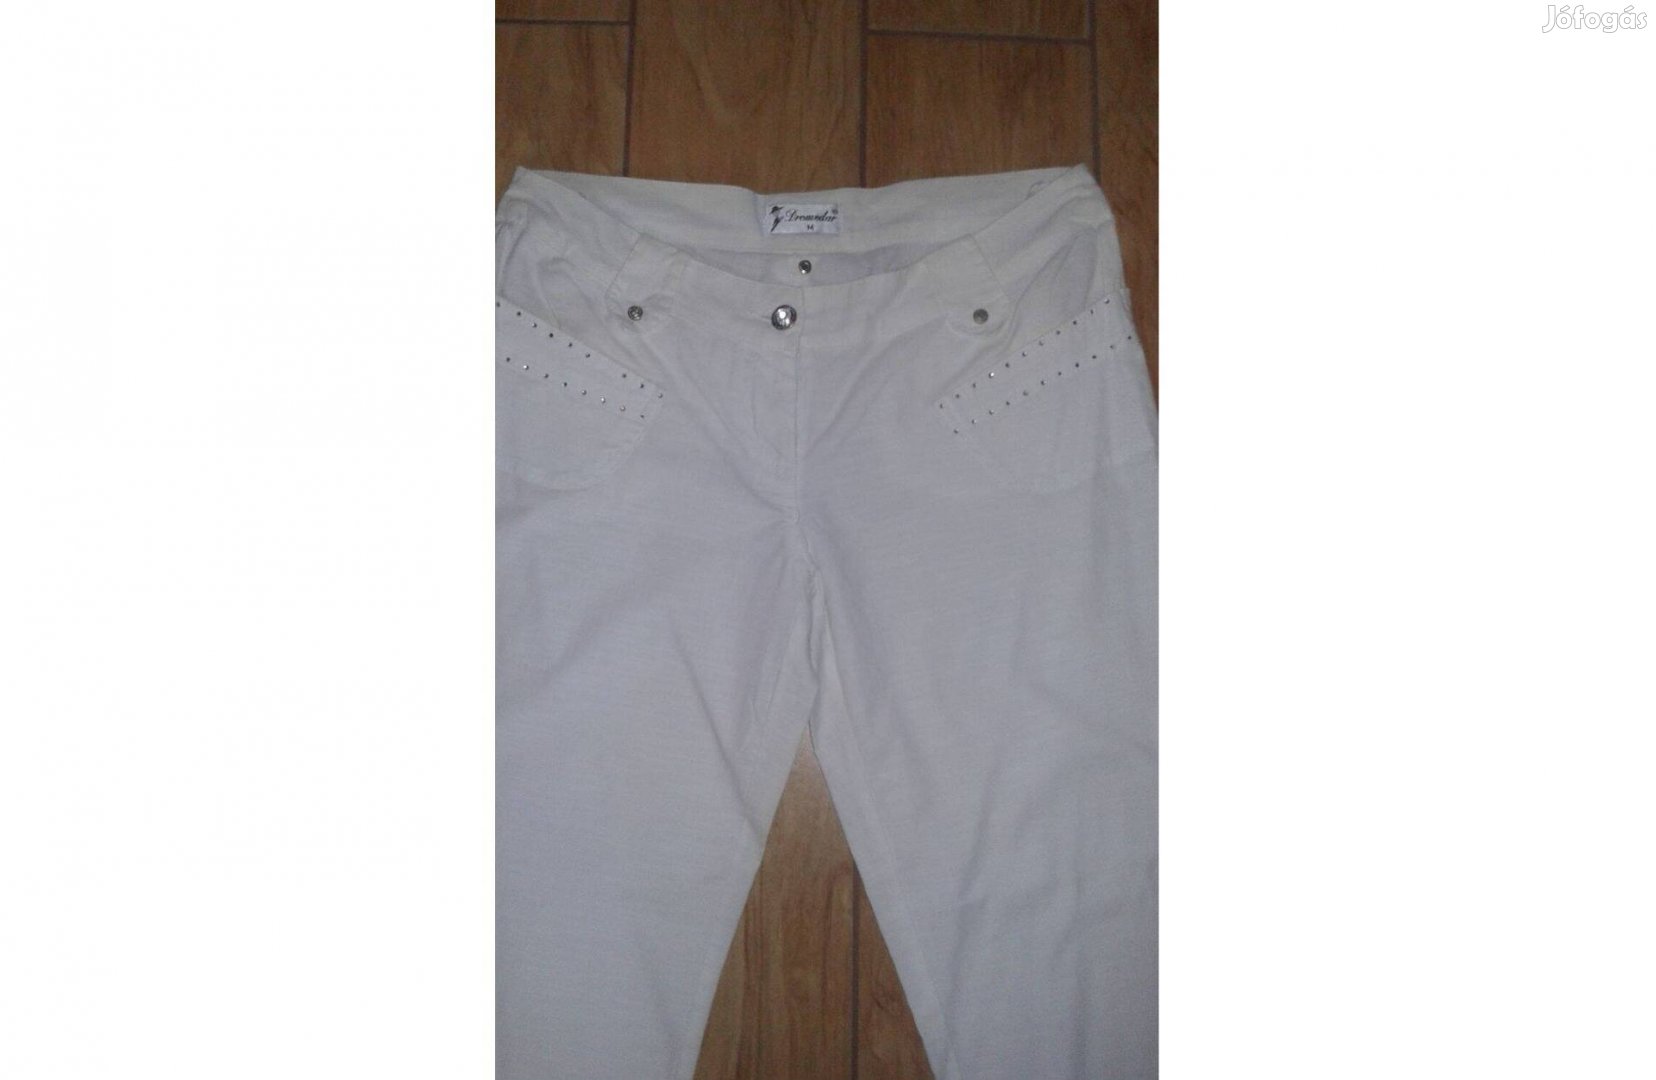 Dromedar márka fehér női térd nadrág M. méretű eladó 5000-ft